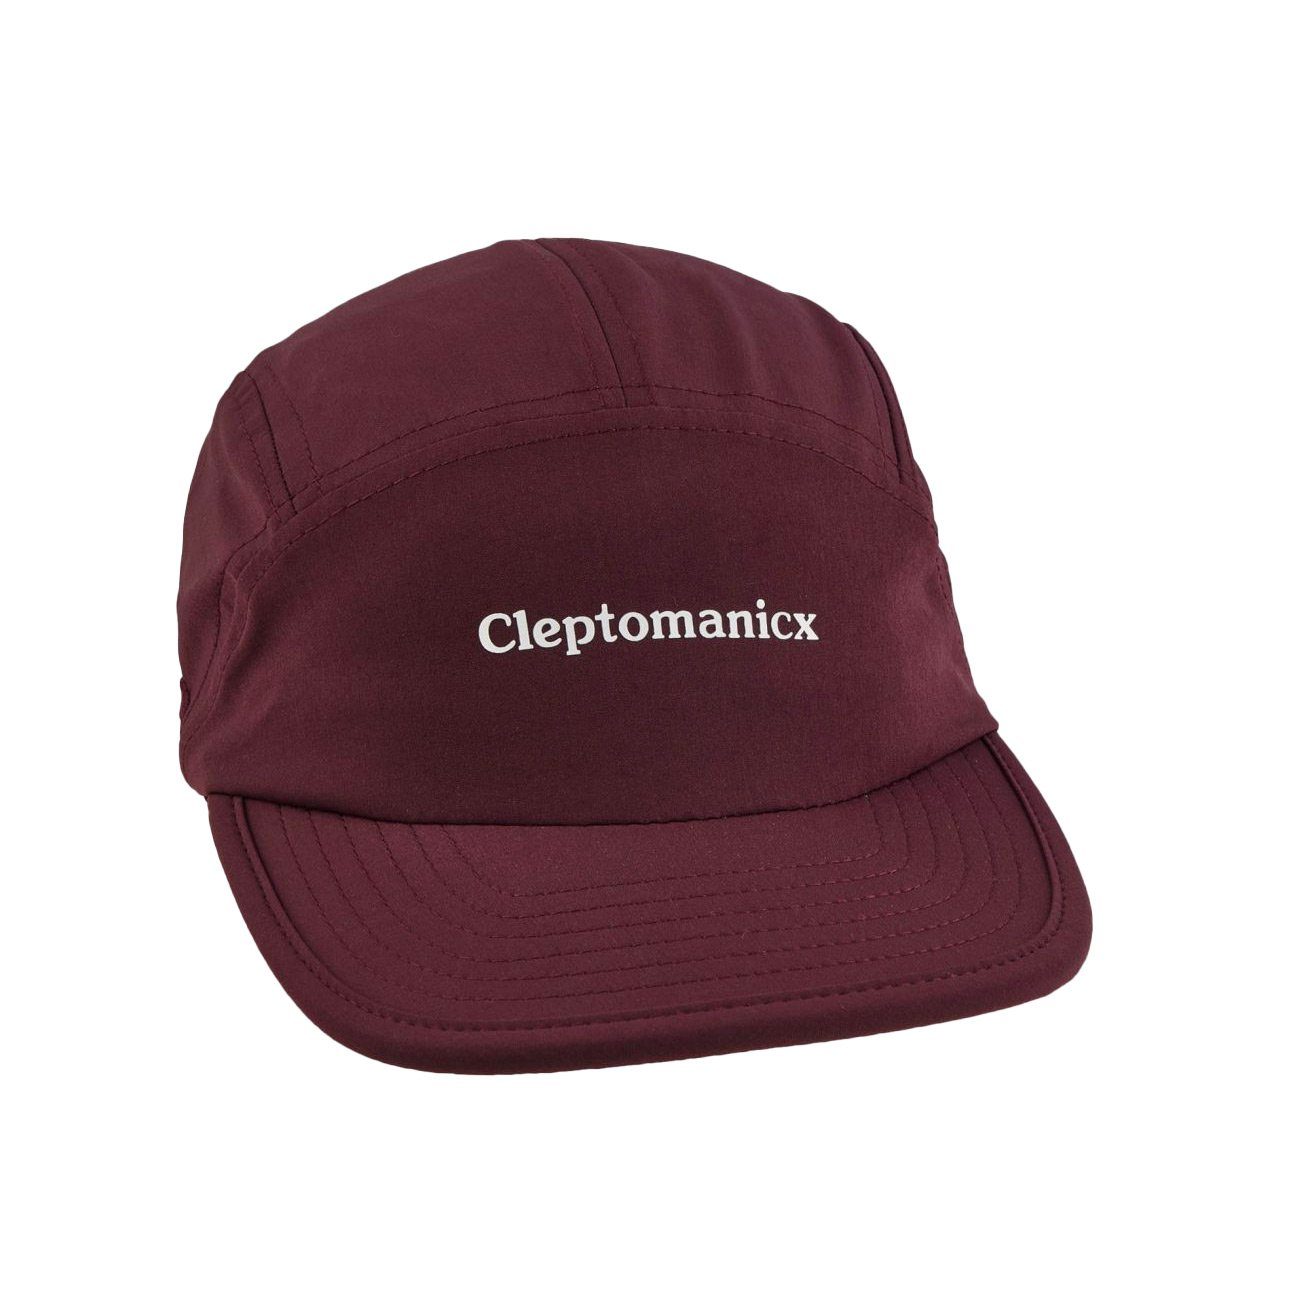 Cleptomanicx Caps für Herren online kaufen | OTTO